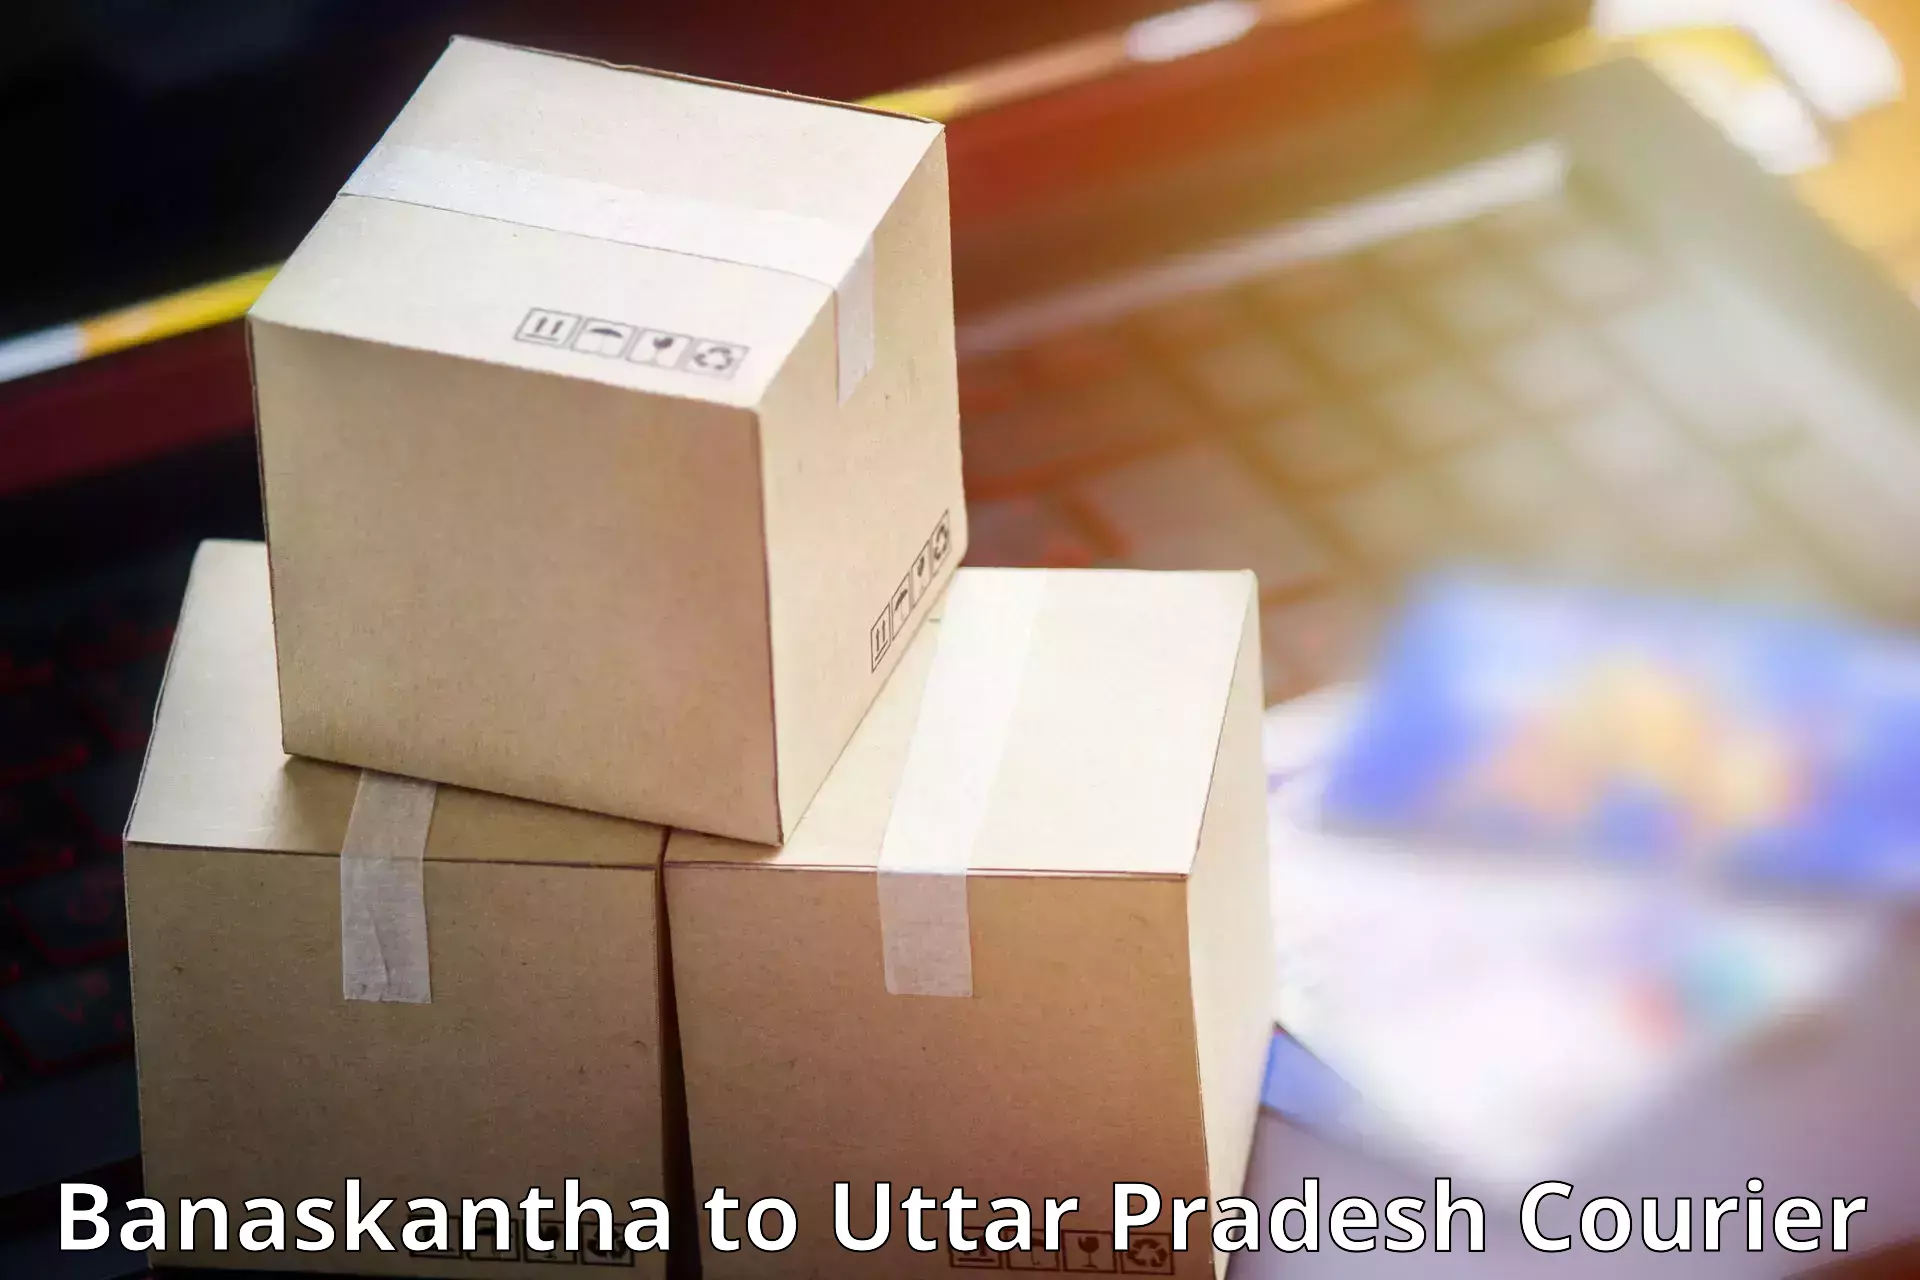 On-call courier service Banaskantha to Ramnagar Varanasi